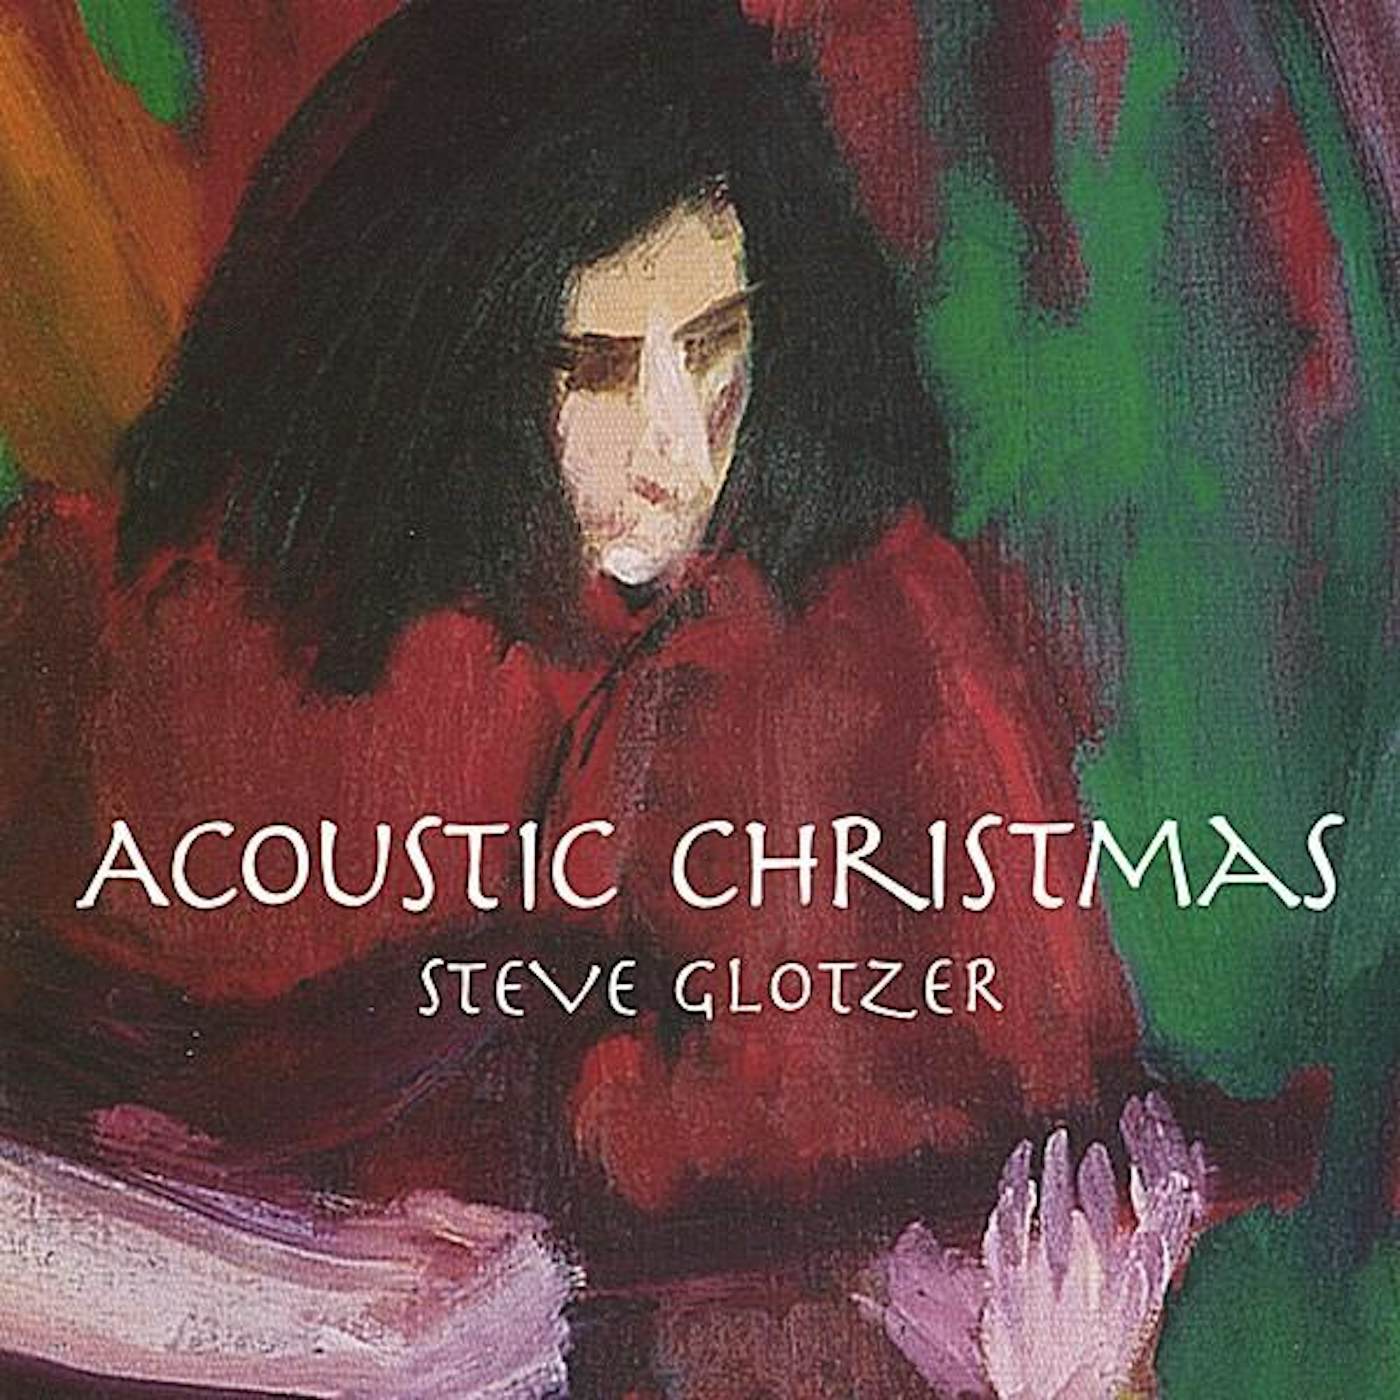 Steve Glotzer ACOUSTIC CHRISTMAS CD